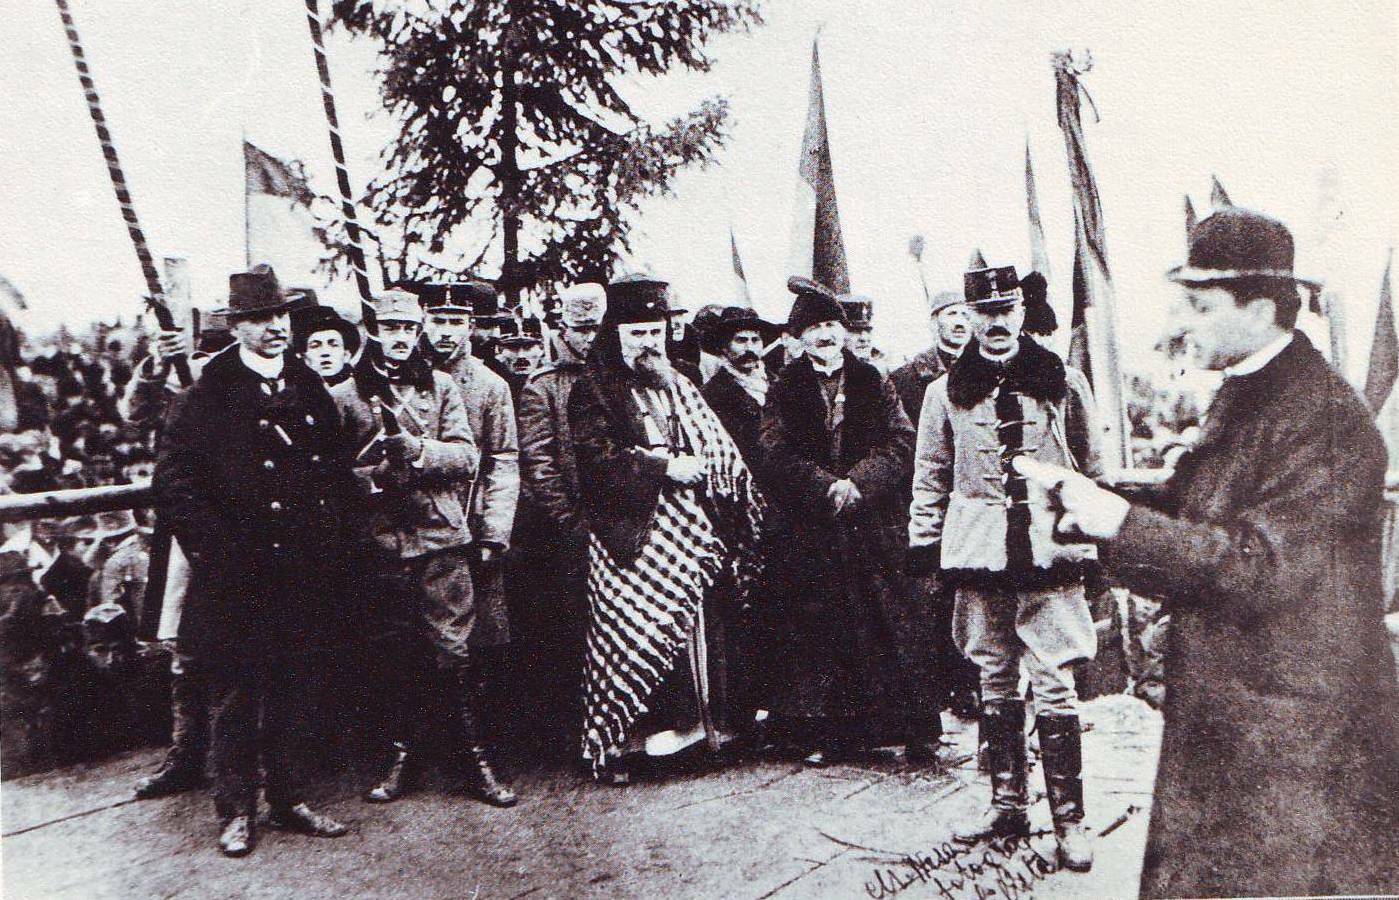 Deschiderea expoziției-eveniment „Semper Uniti. Centenarul Desăvârșirii Unității Naționale” la Muzeul Național de Istorie a României